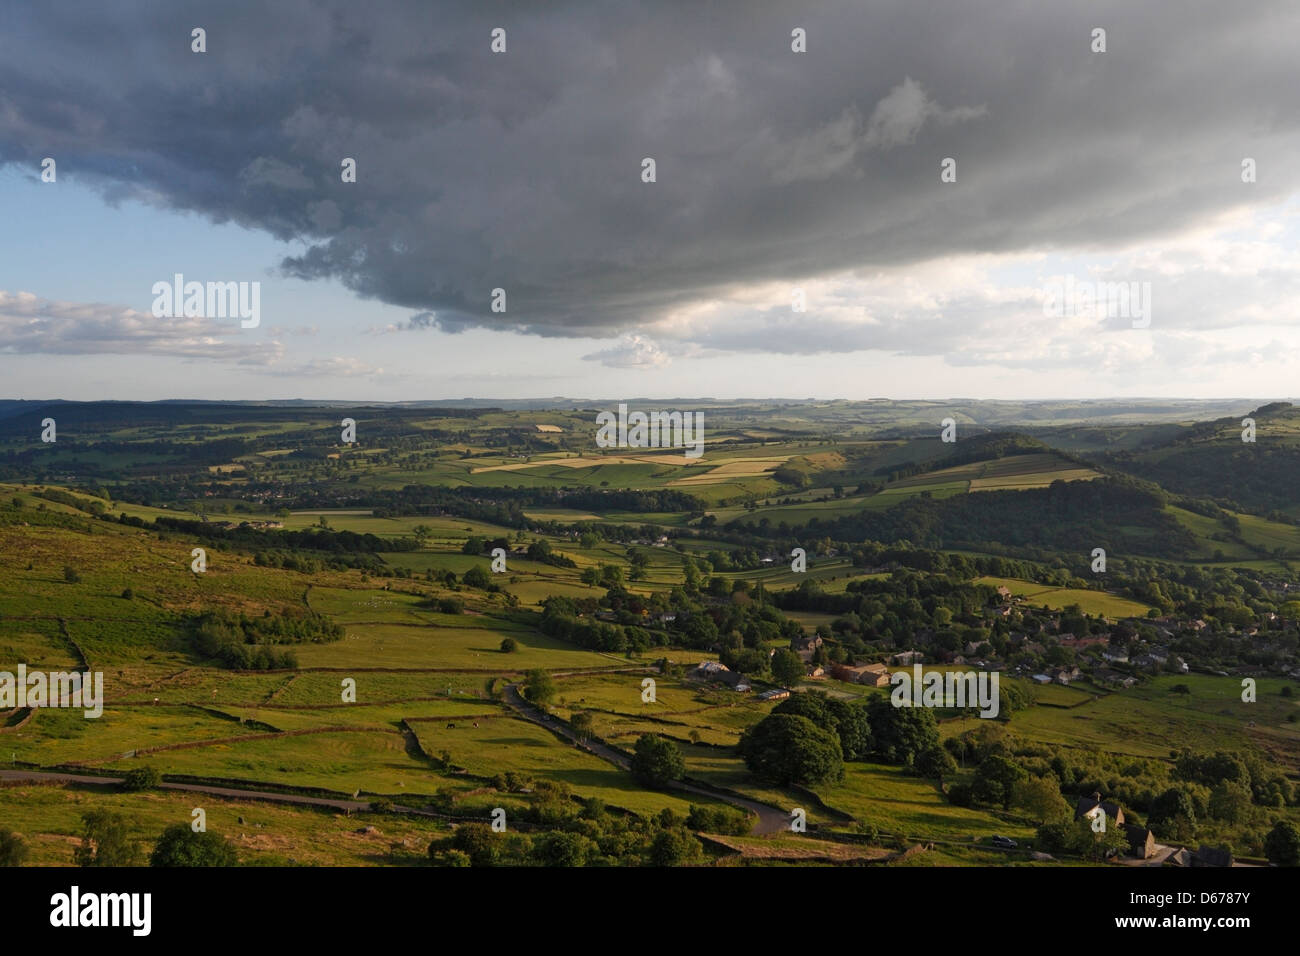 Nuvole drammatiche che si affacciano sul bordo Curbar nel Derbyshire Inghilterra Regno Unito. Peak District Parco Nazionale paesaggio. Campagna inglese Derwent Valley Foto Stock